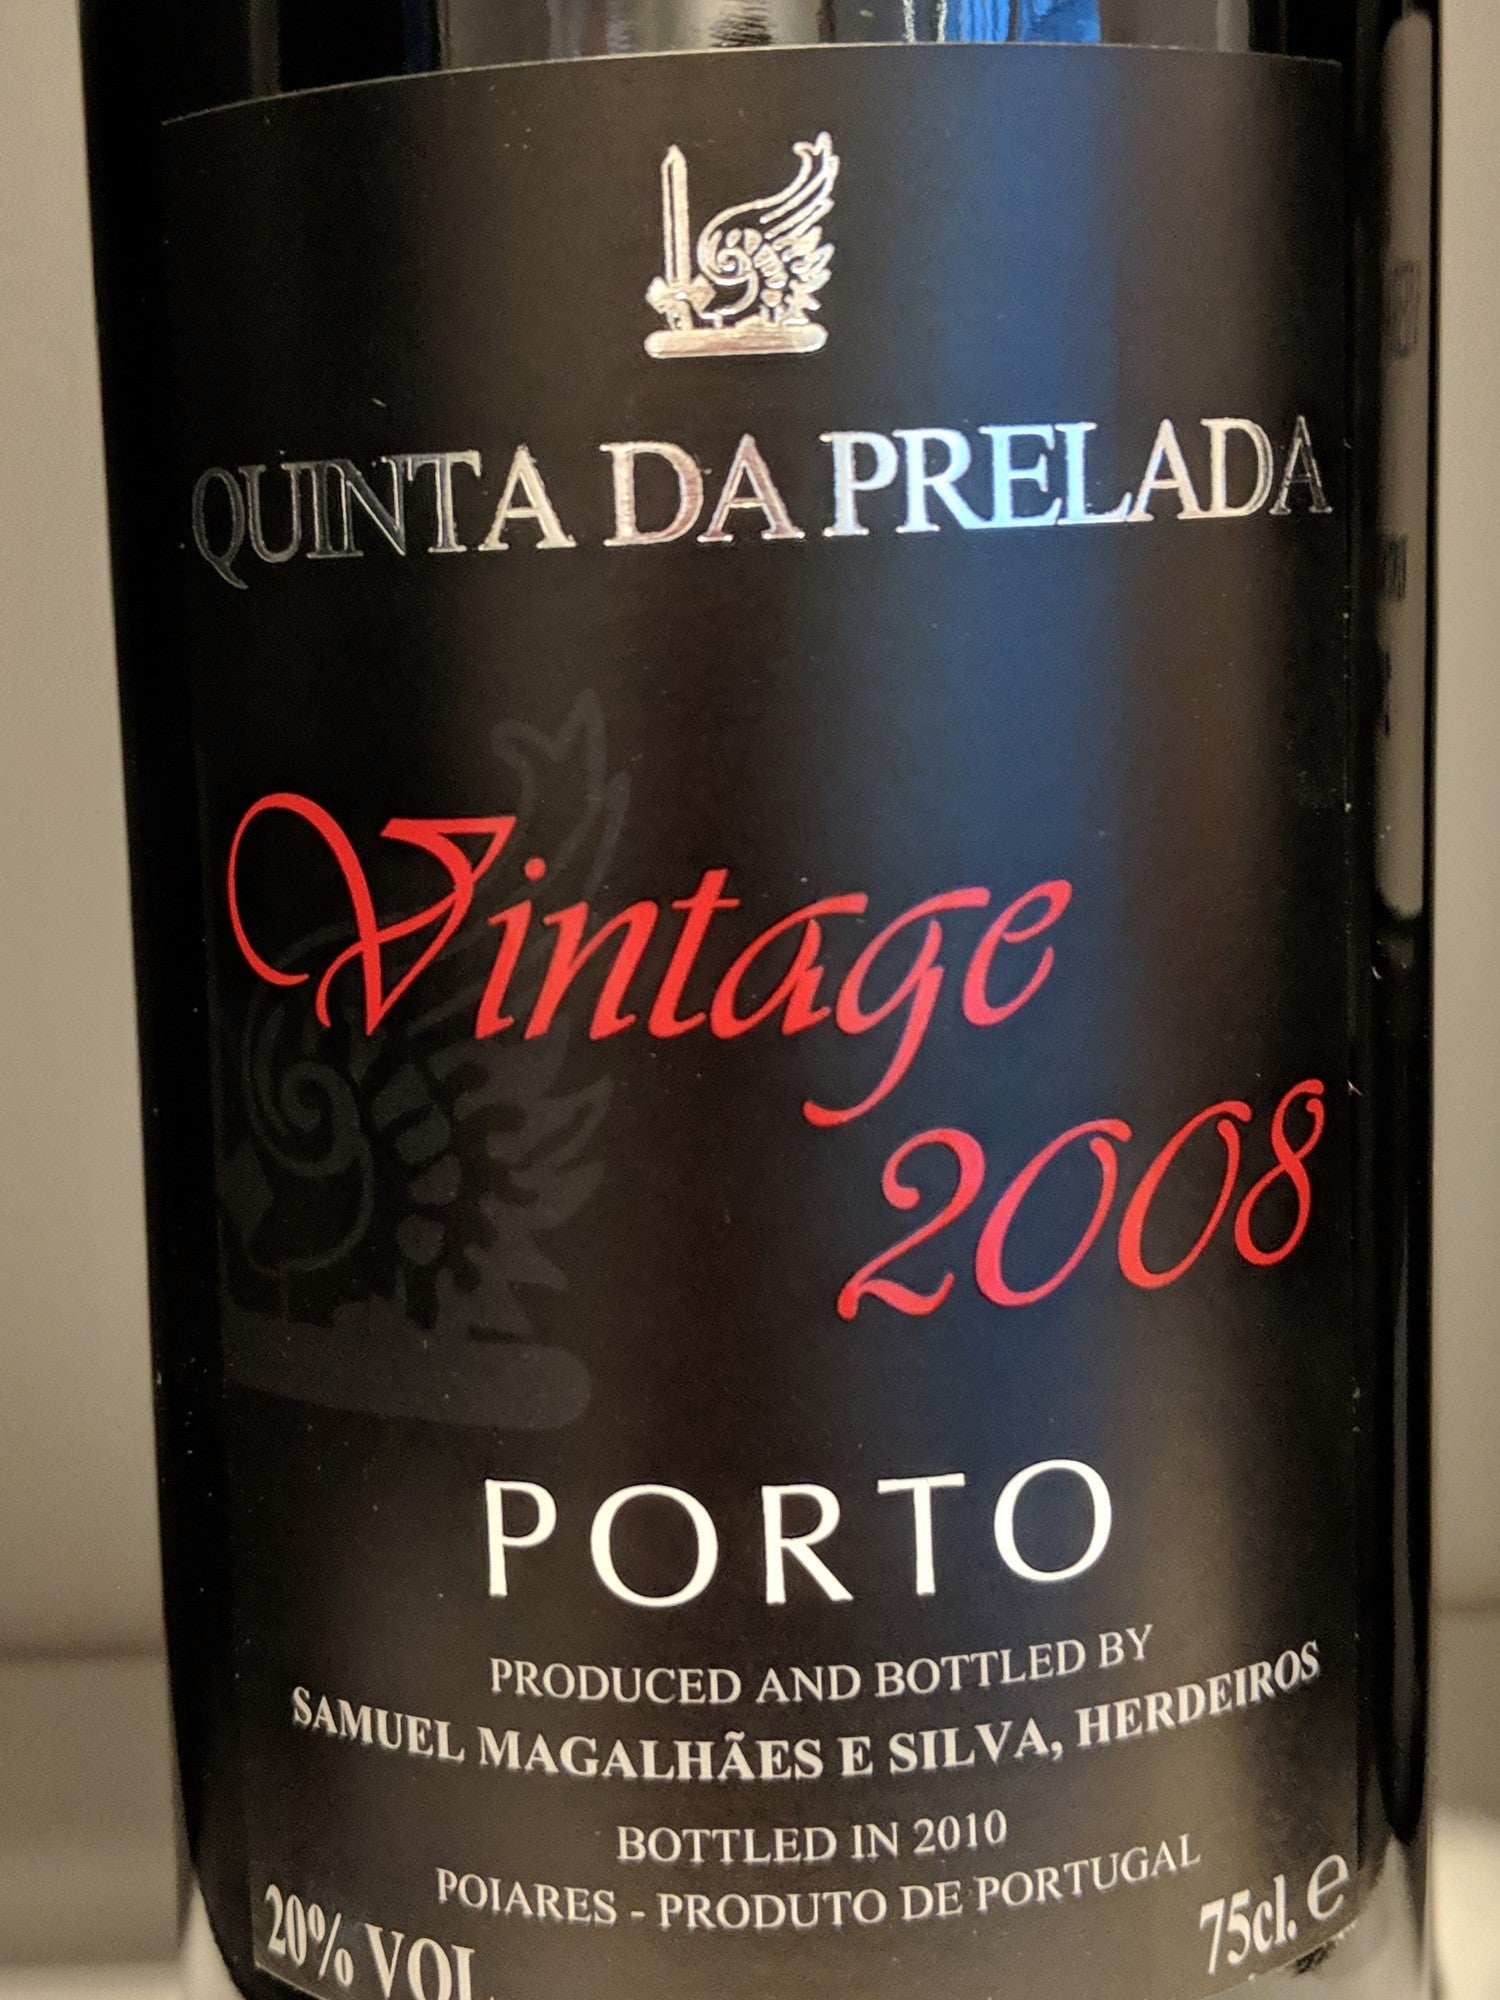 Vintage 2008 - Quinta da Prelada